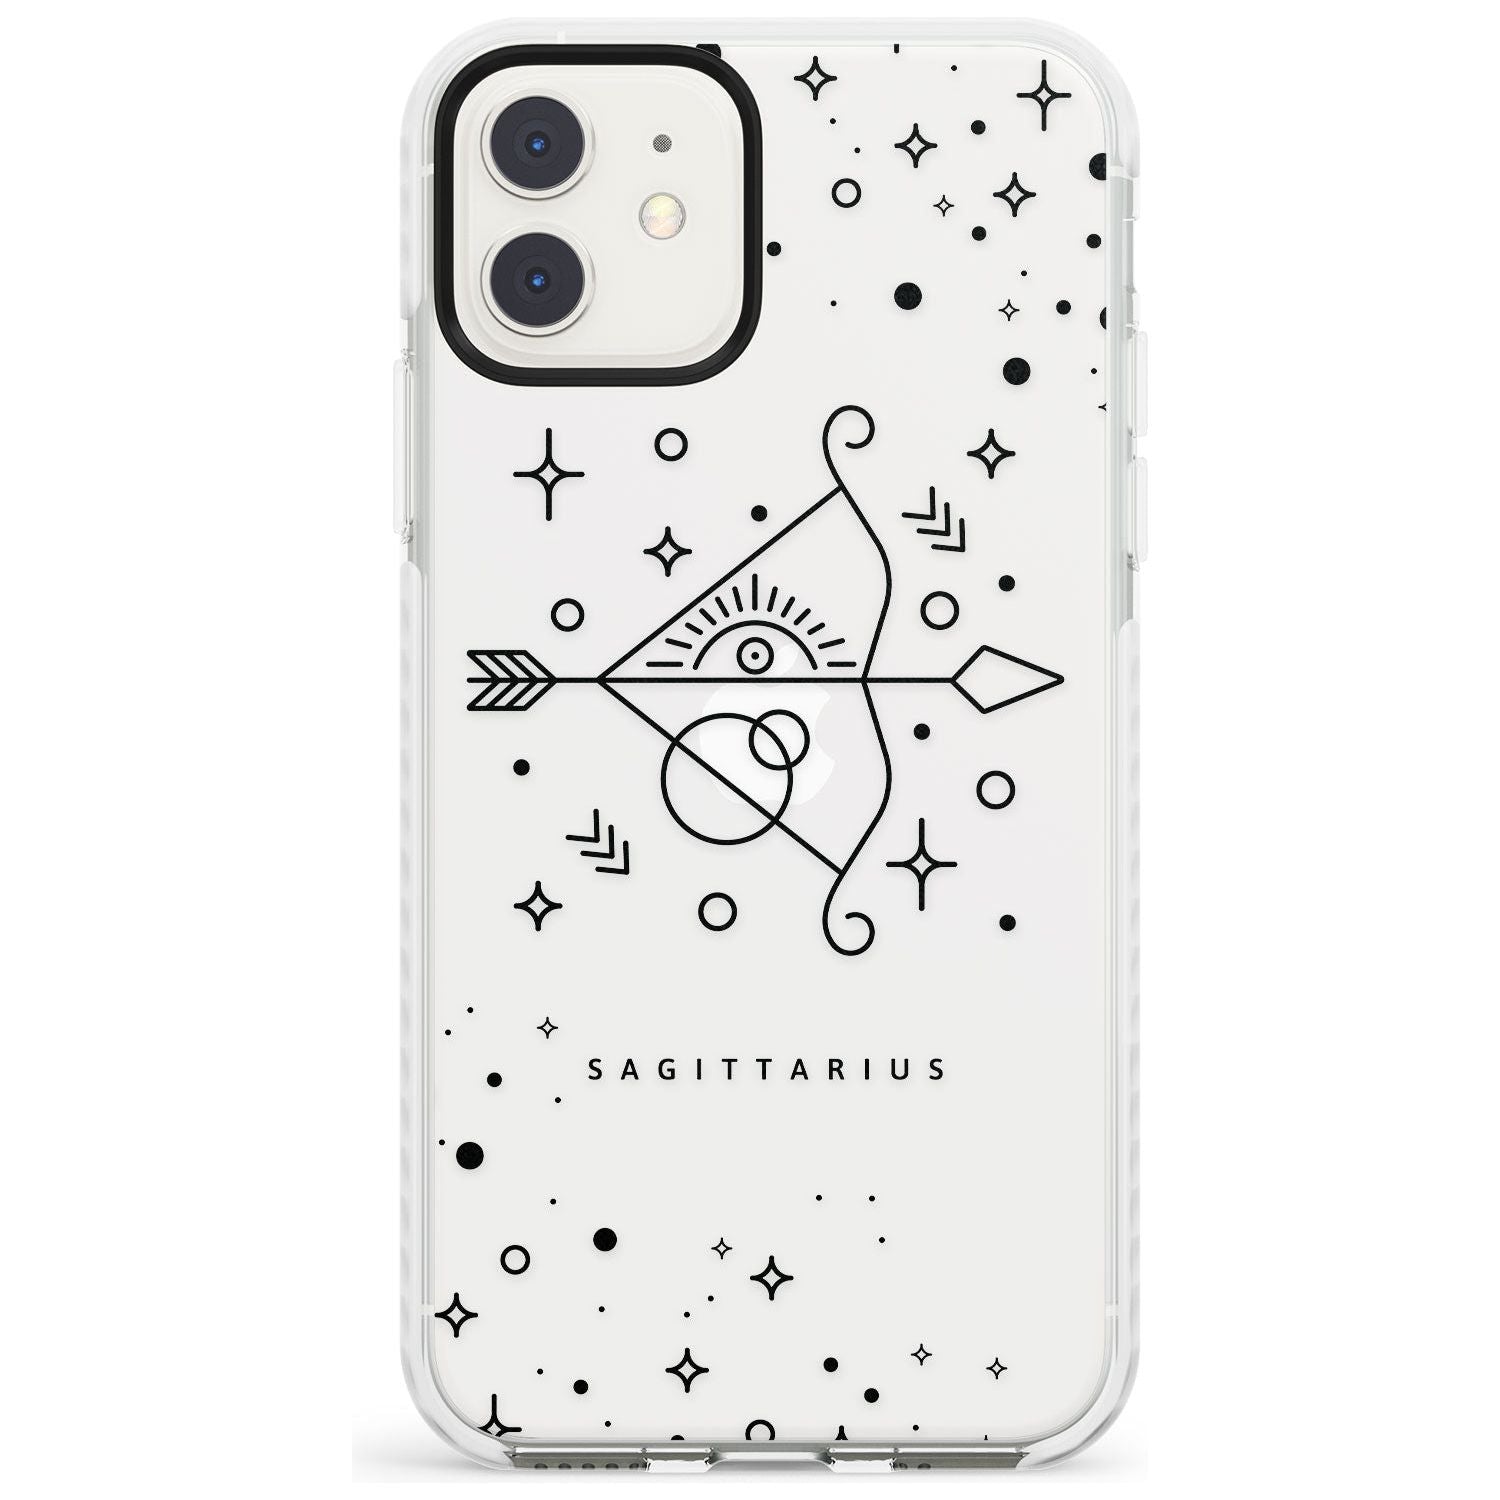 Sagittarius Emblem - Transparent Design Impact Phone Case for iPhone 11